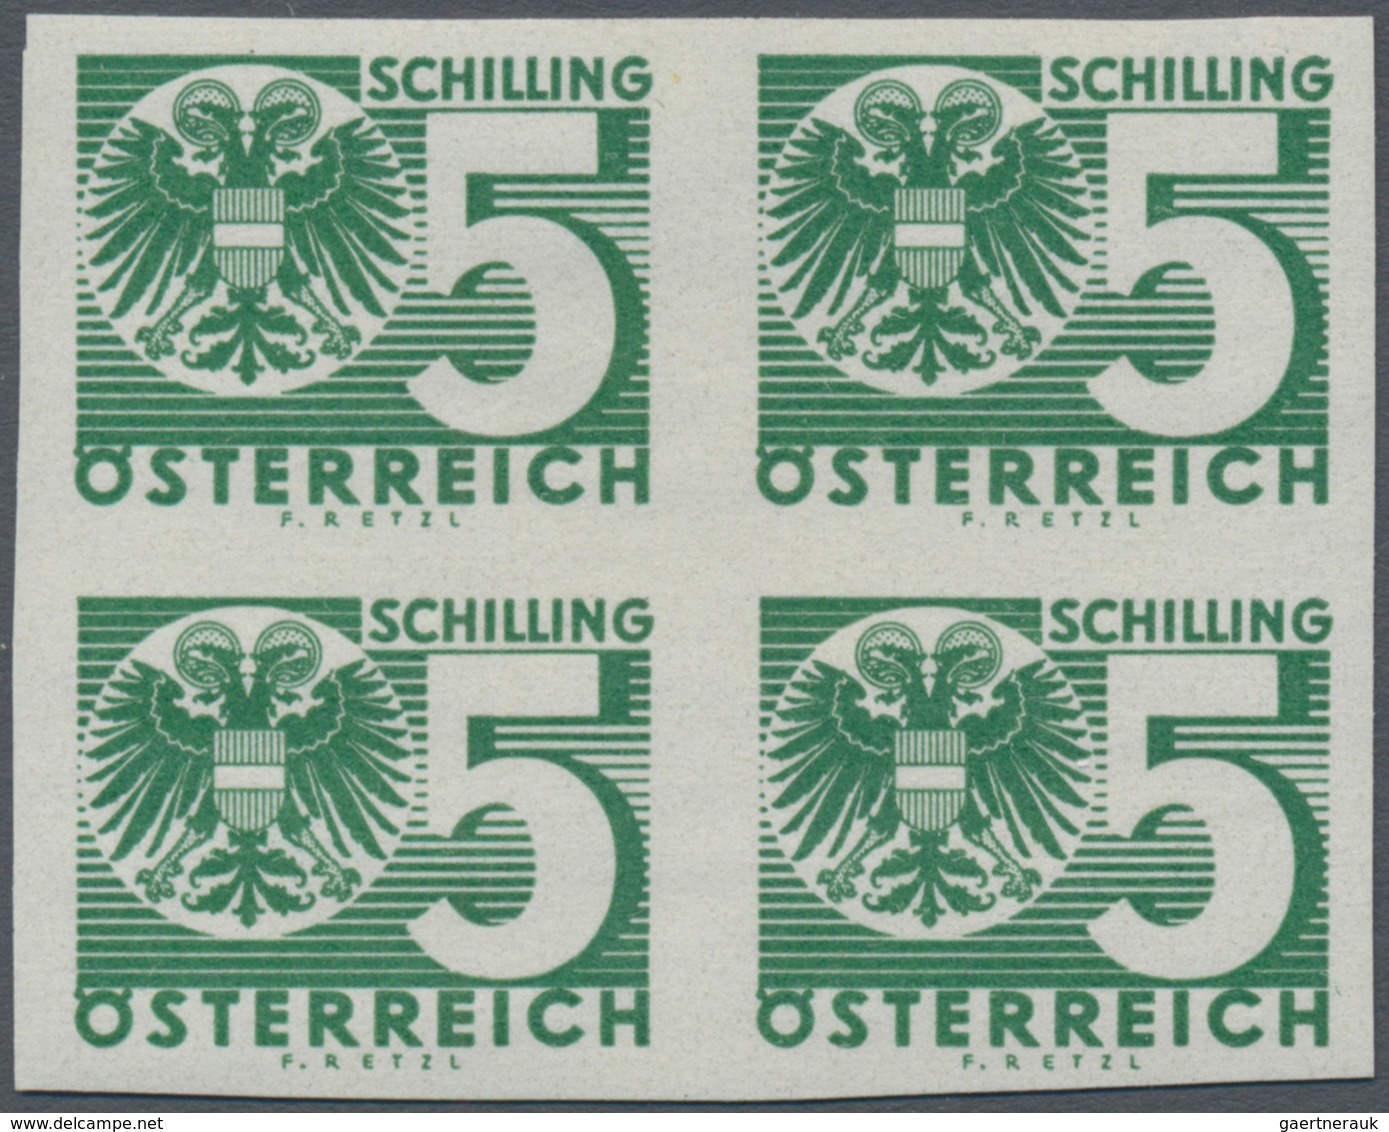 Österreich - Portomarken: 1935, Ziffern/Wappen, 1 Gr. bis 10 Sch., komplette Serie in ungezähnten 4e